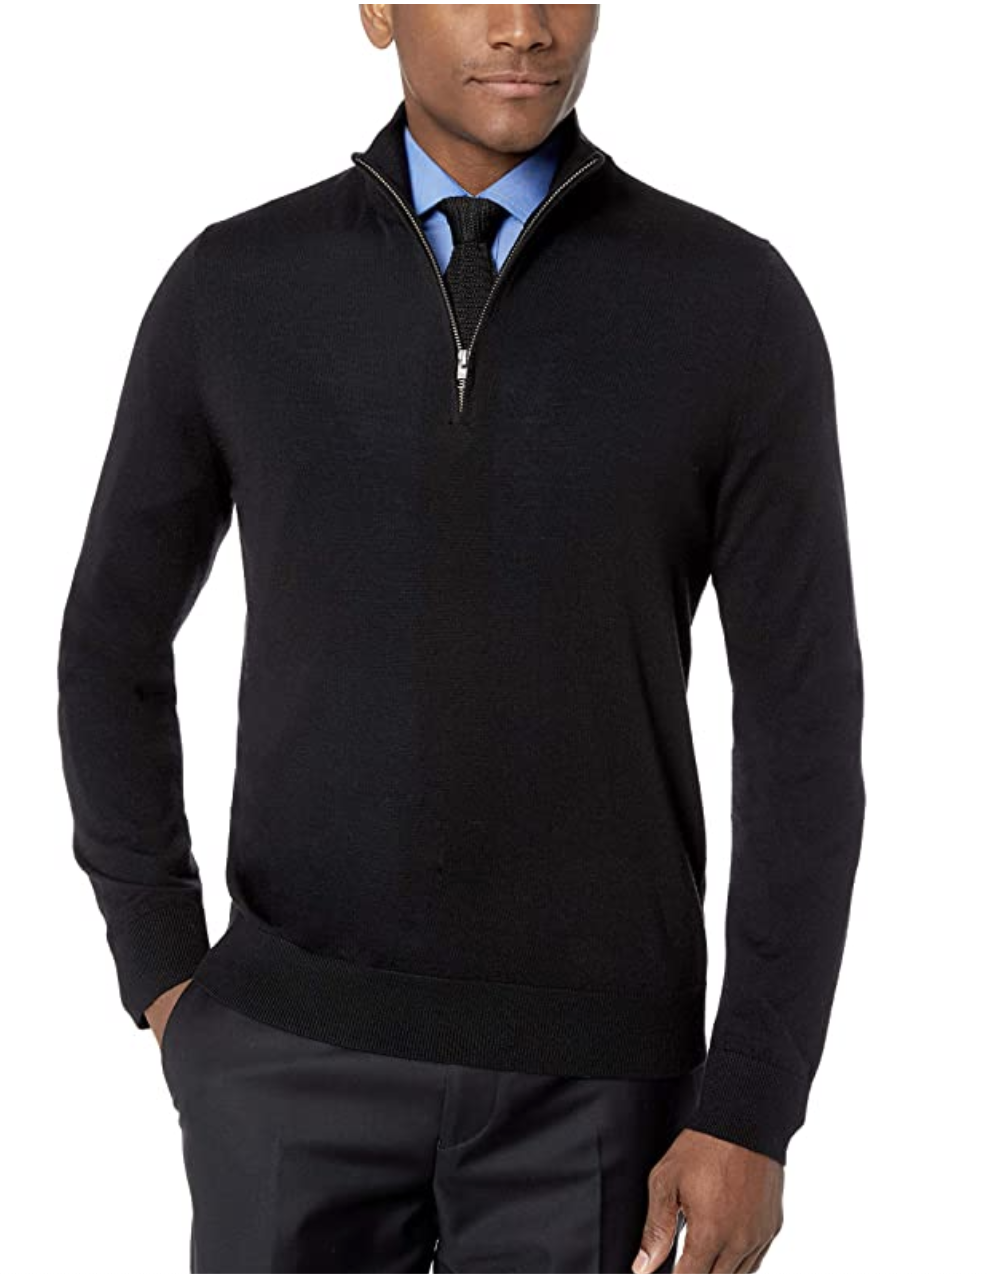 model in a black quarter zip sweater 